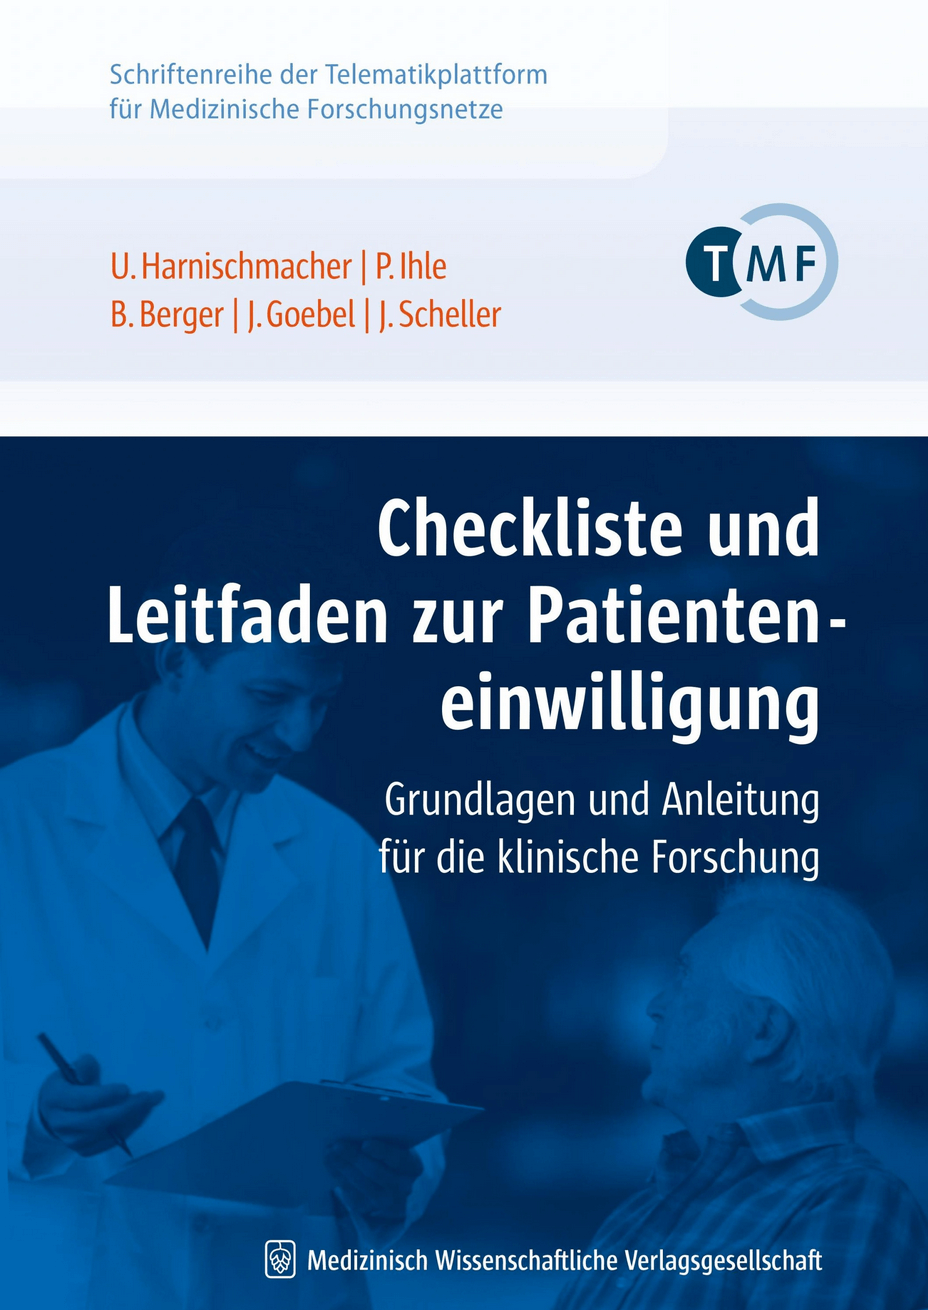 Cover der TMF-Schriftenreihe Checkliste und Leitfaden zur Patienteneinwilligung